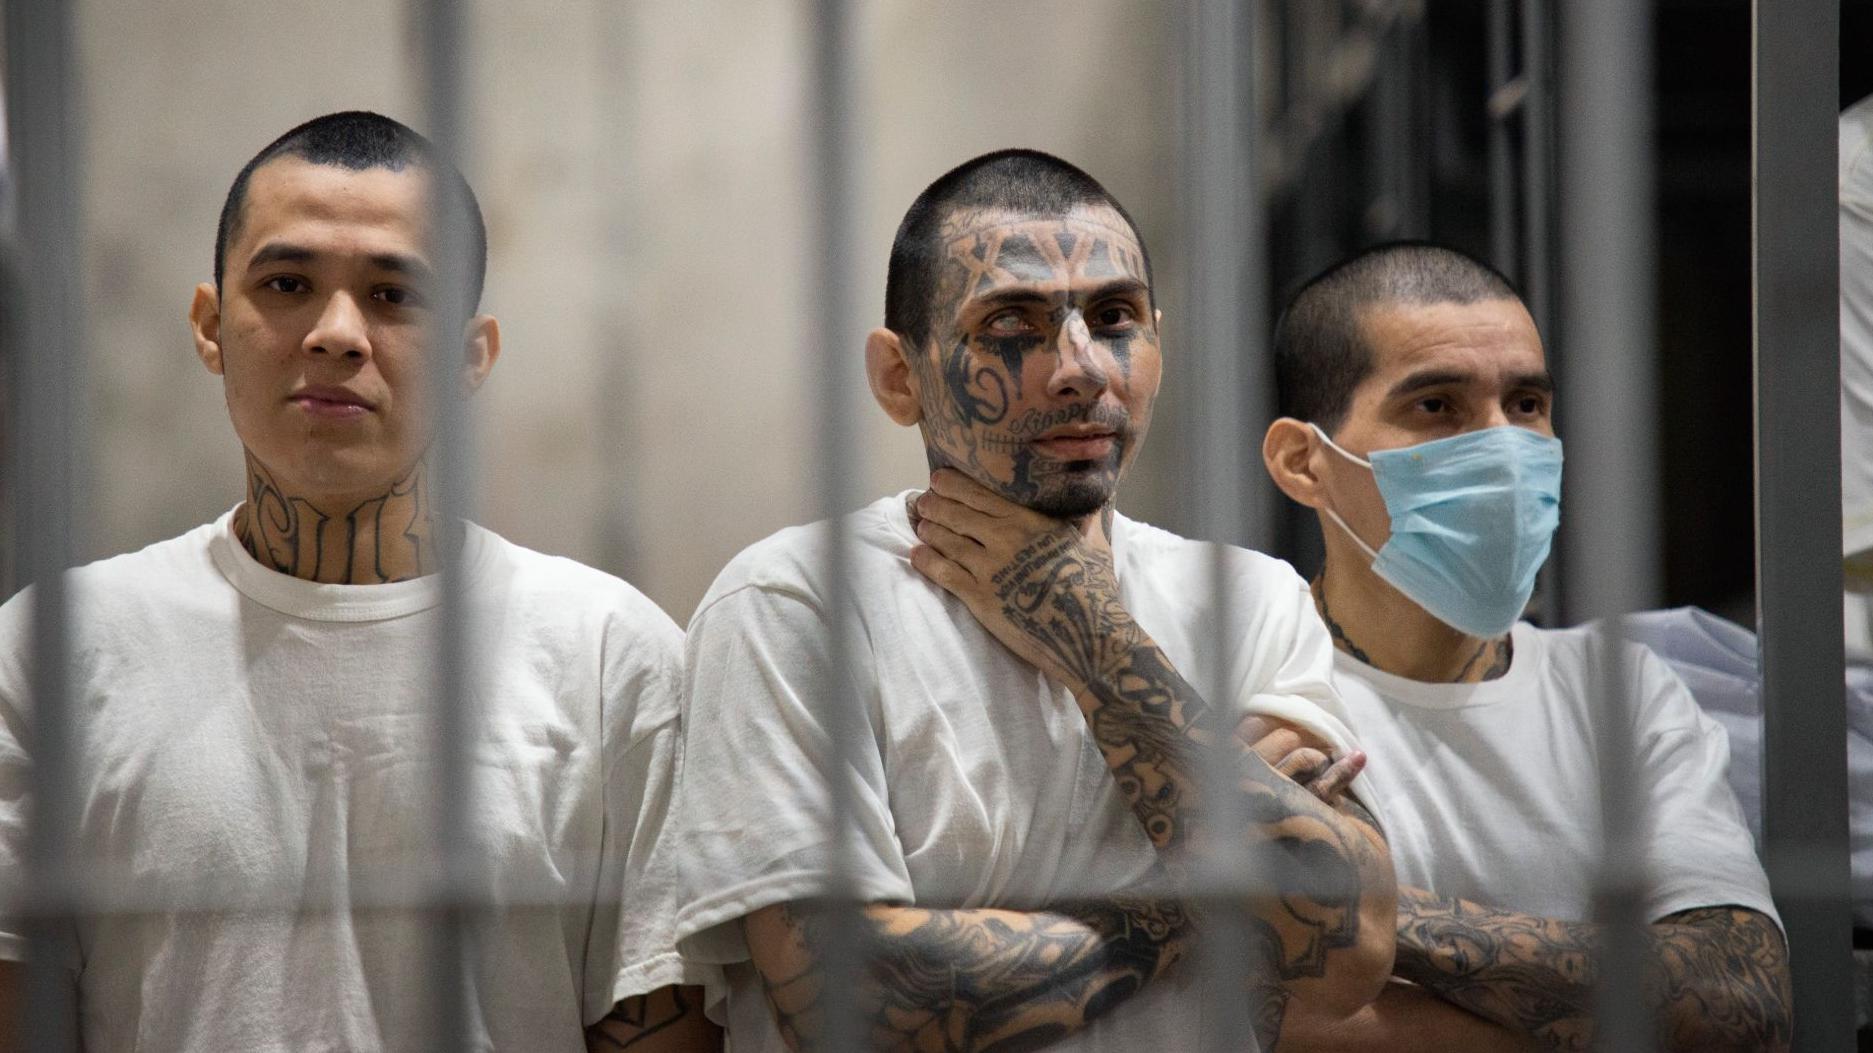 Tres reclusos con tatuajes, tras las rejas en la cárcel Cecot, El Salvador